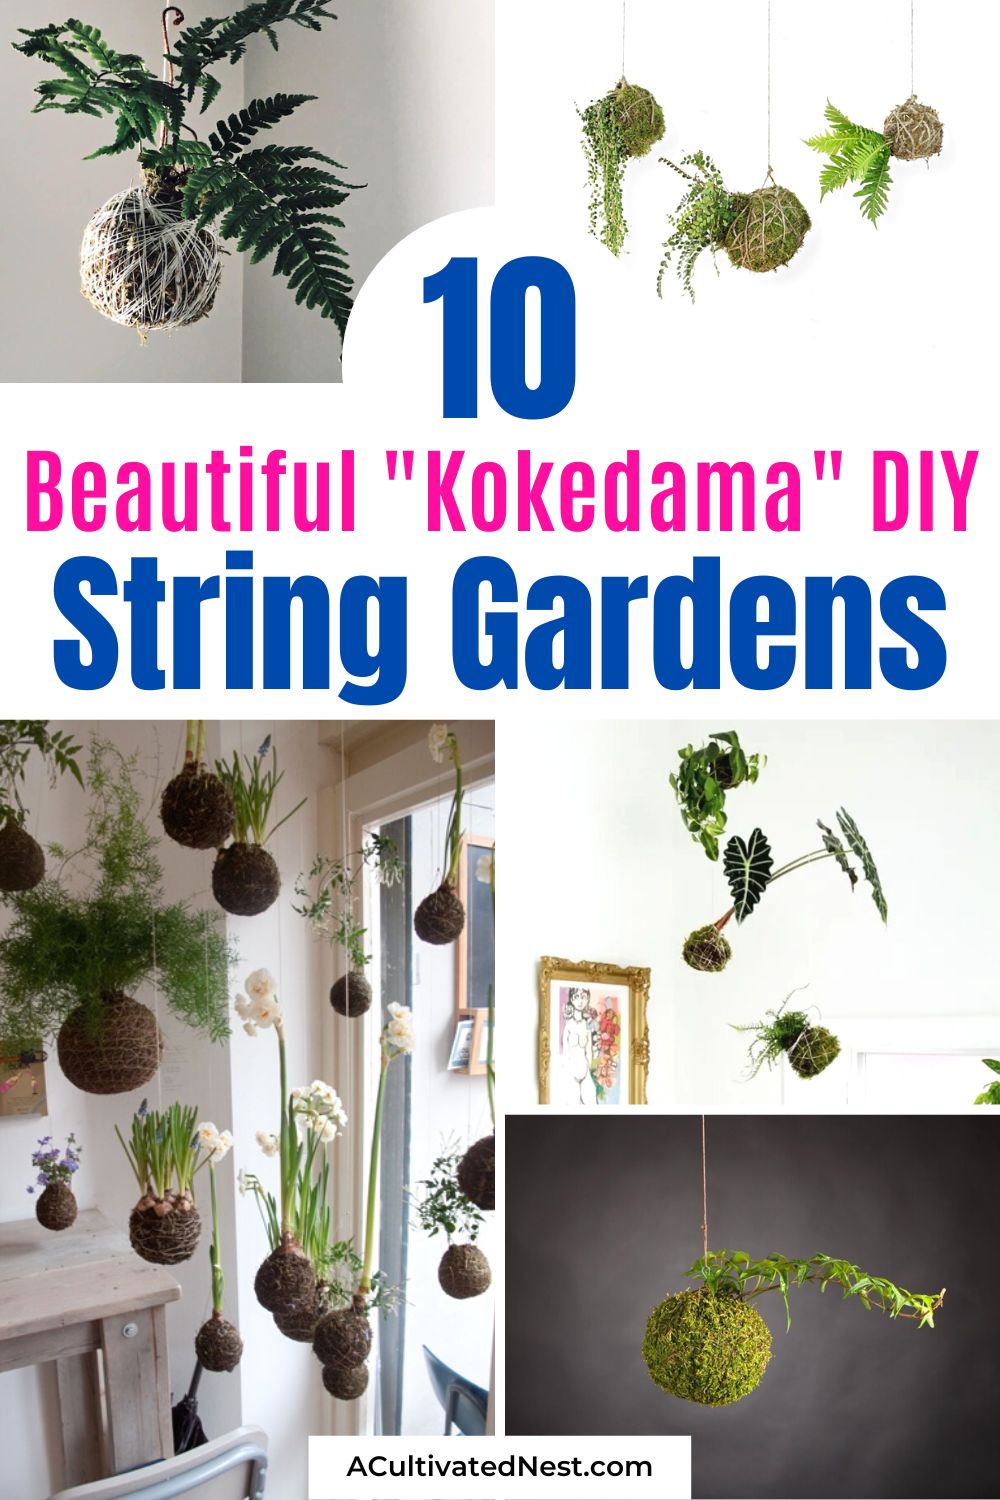 DIY: Make your own kokedama ball